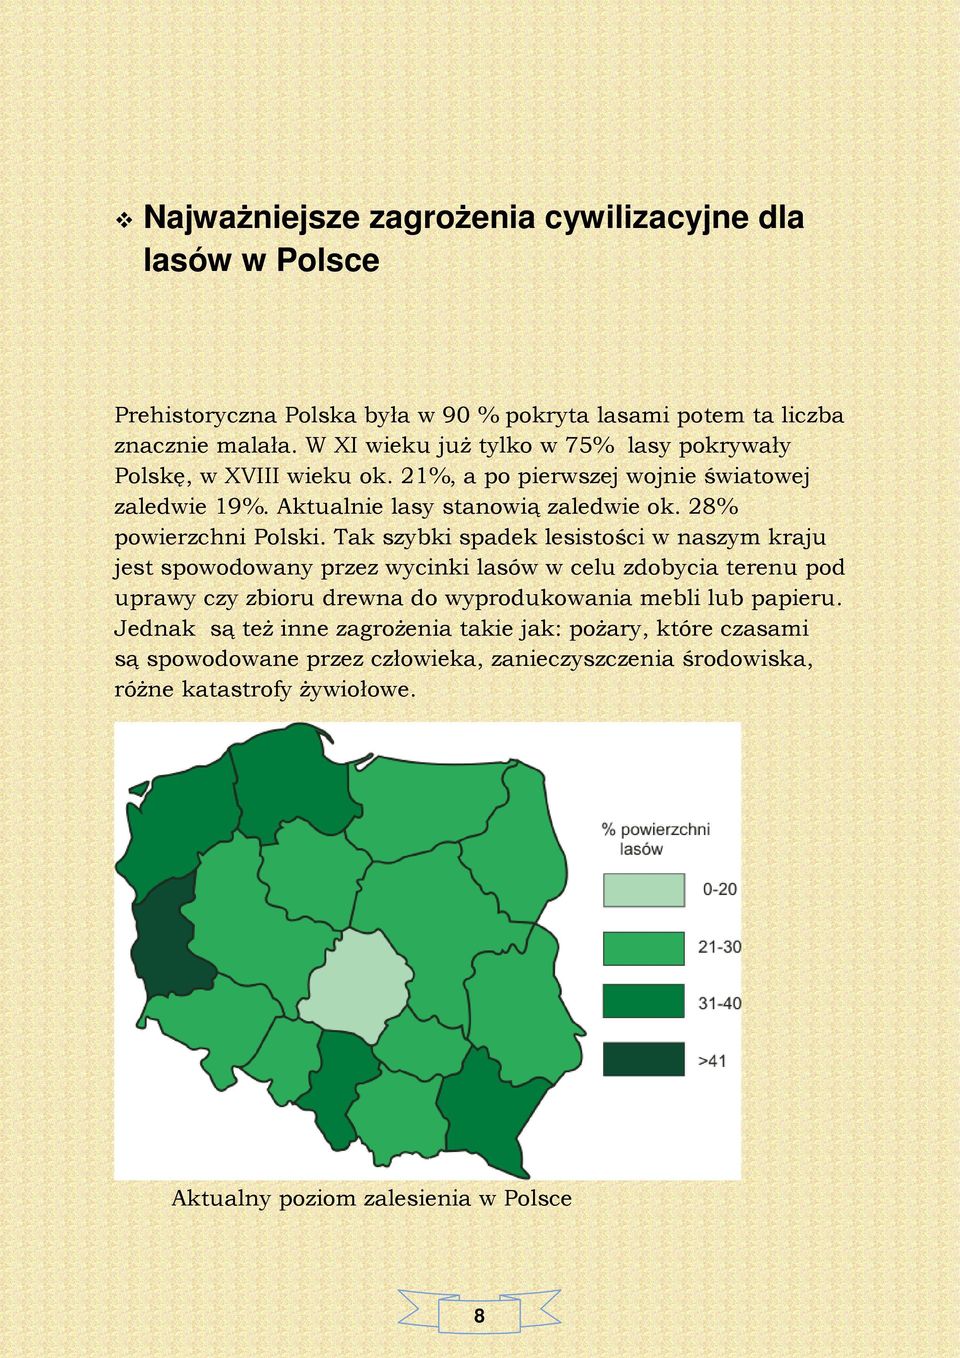 28% powierzchni Polski.